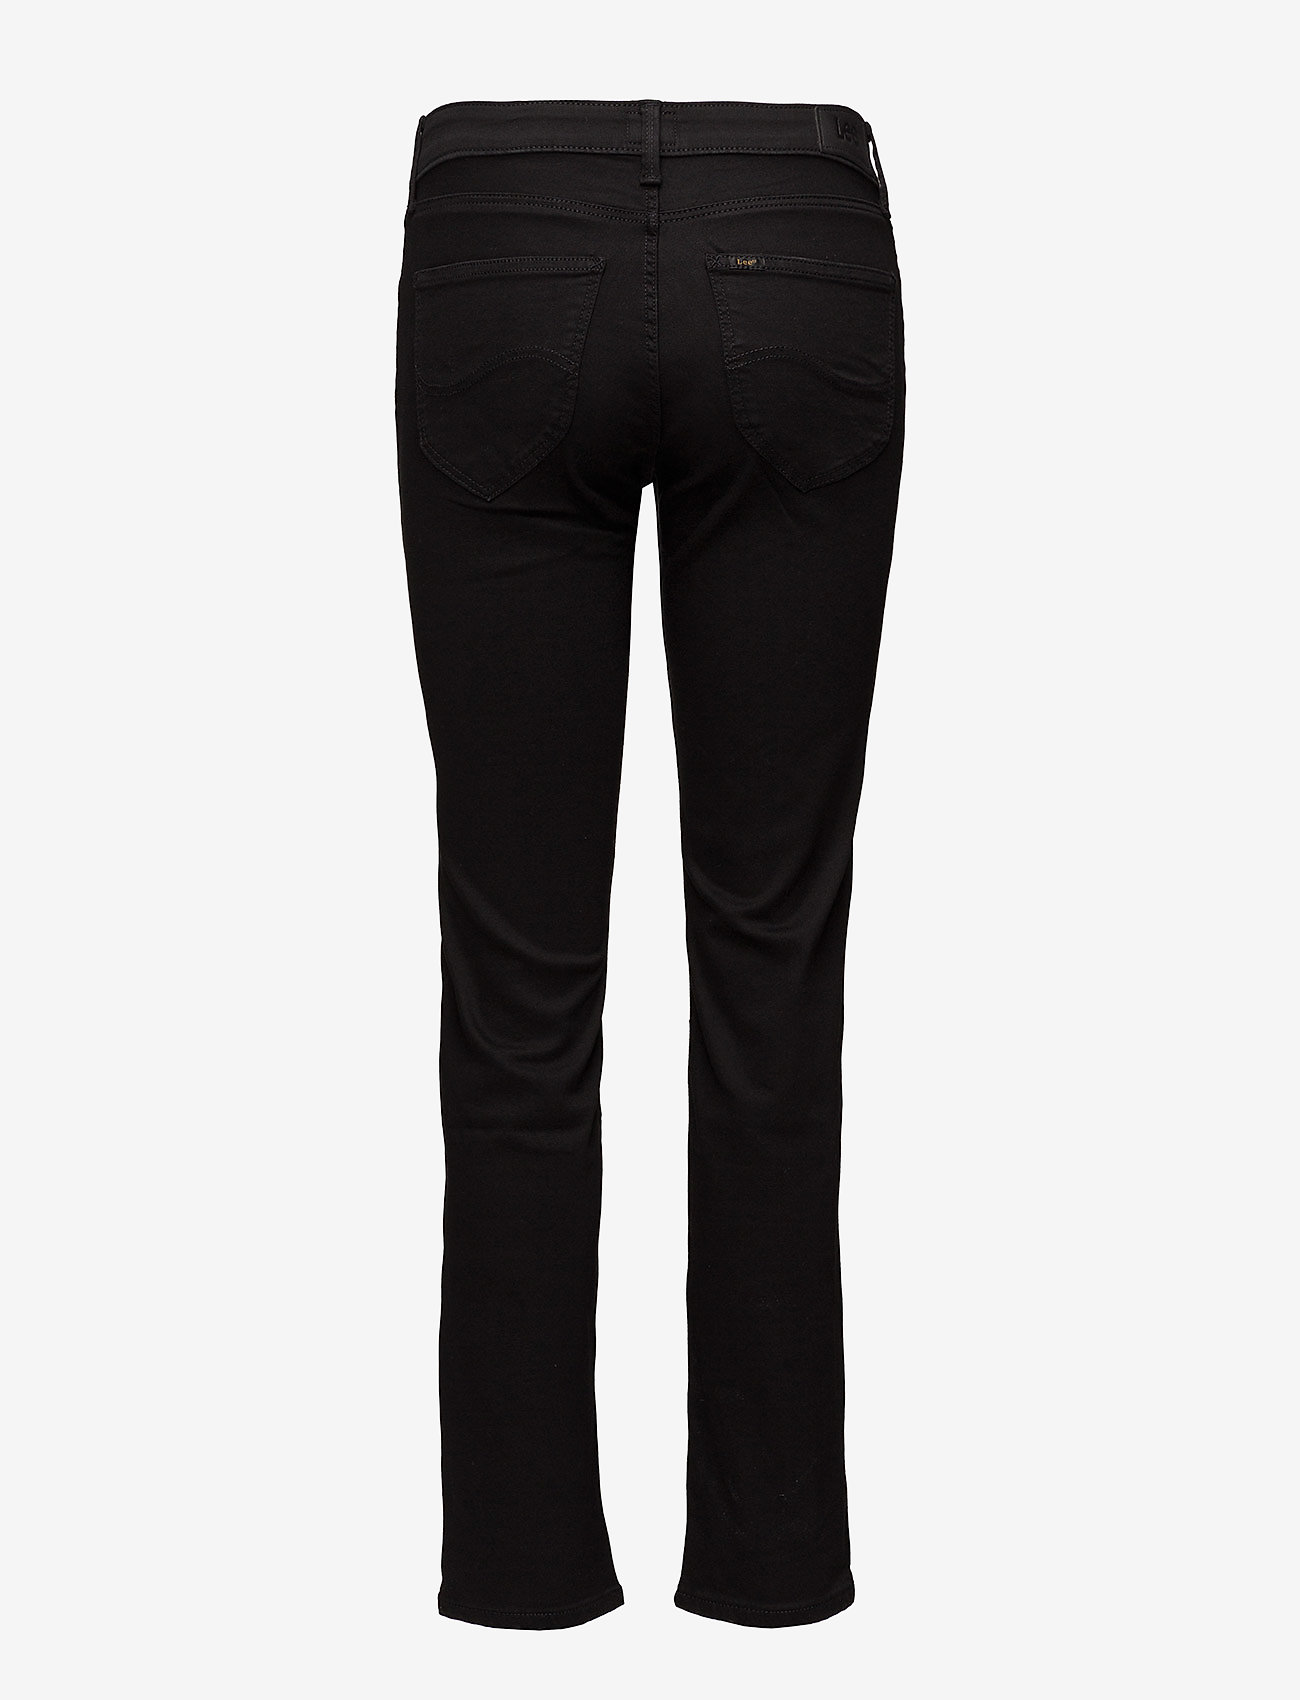 Lee Jeans - Marion Straight - tiesaus kirpimo džinsai - black rinse - 1